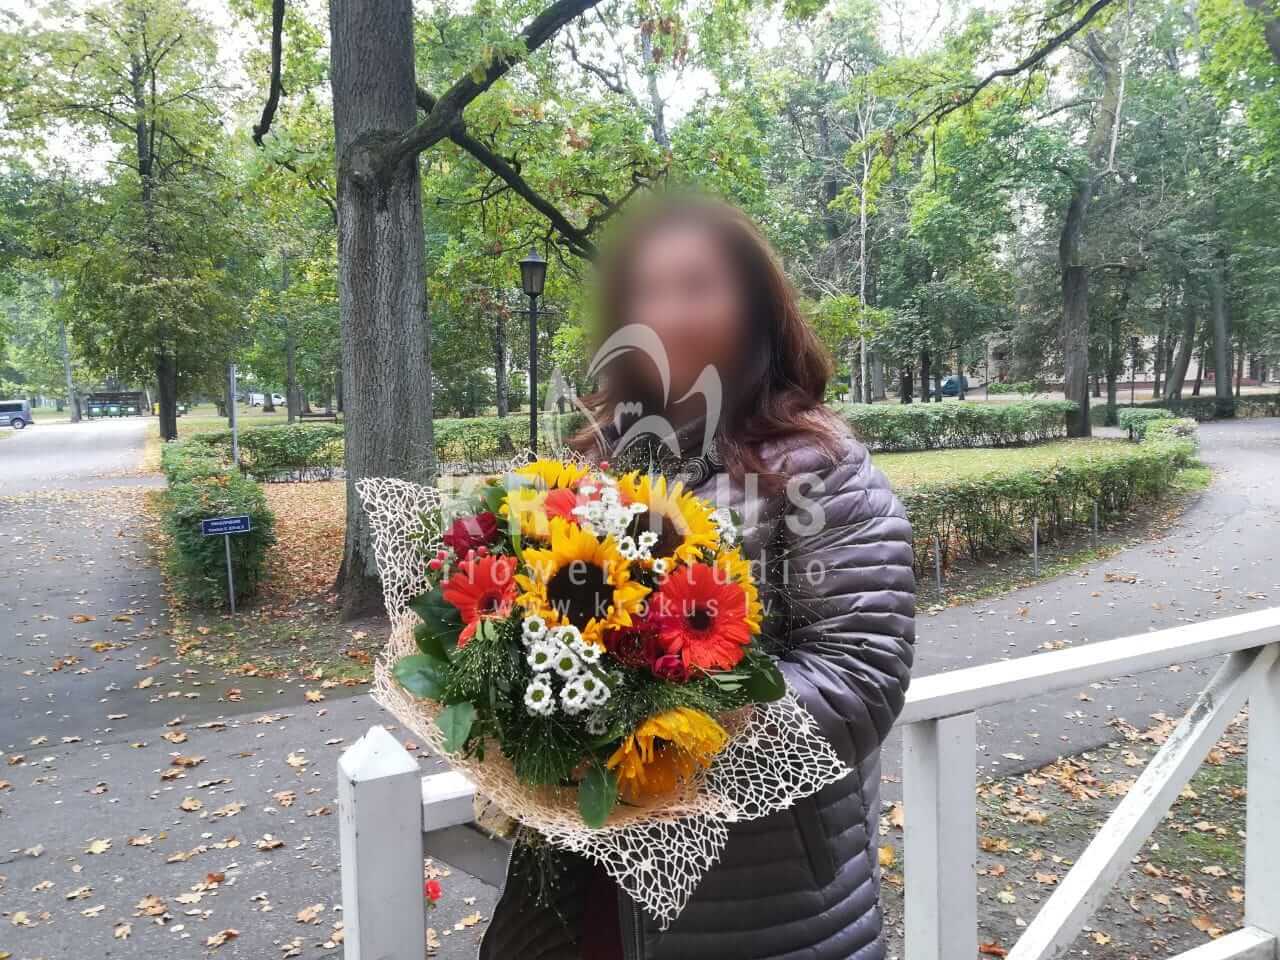 Доставка цветов в город Рига (кустовые розыподсолнухилуговые цветысолидагохризантемыгиперикумгерберы)